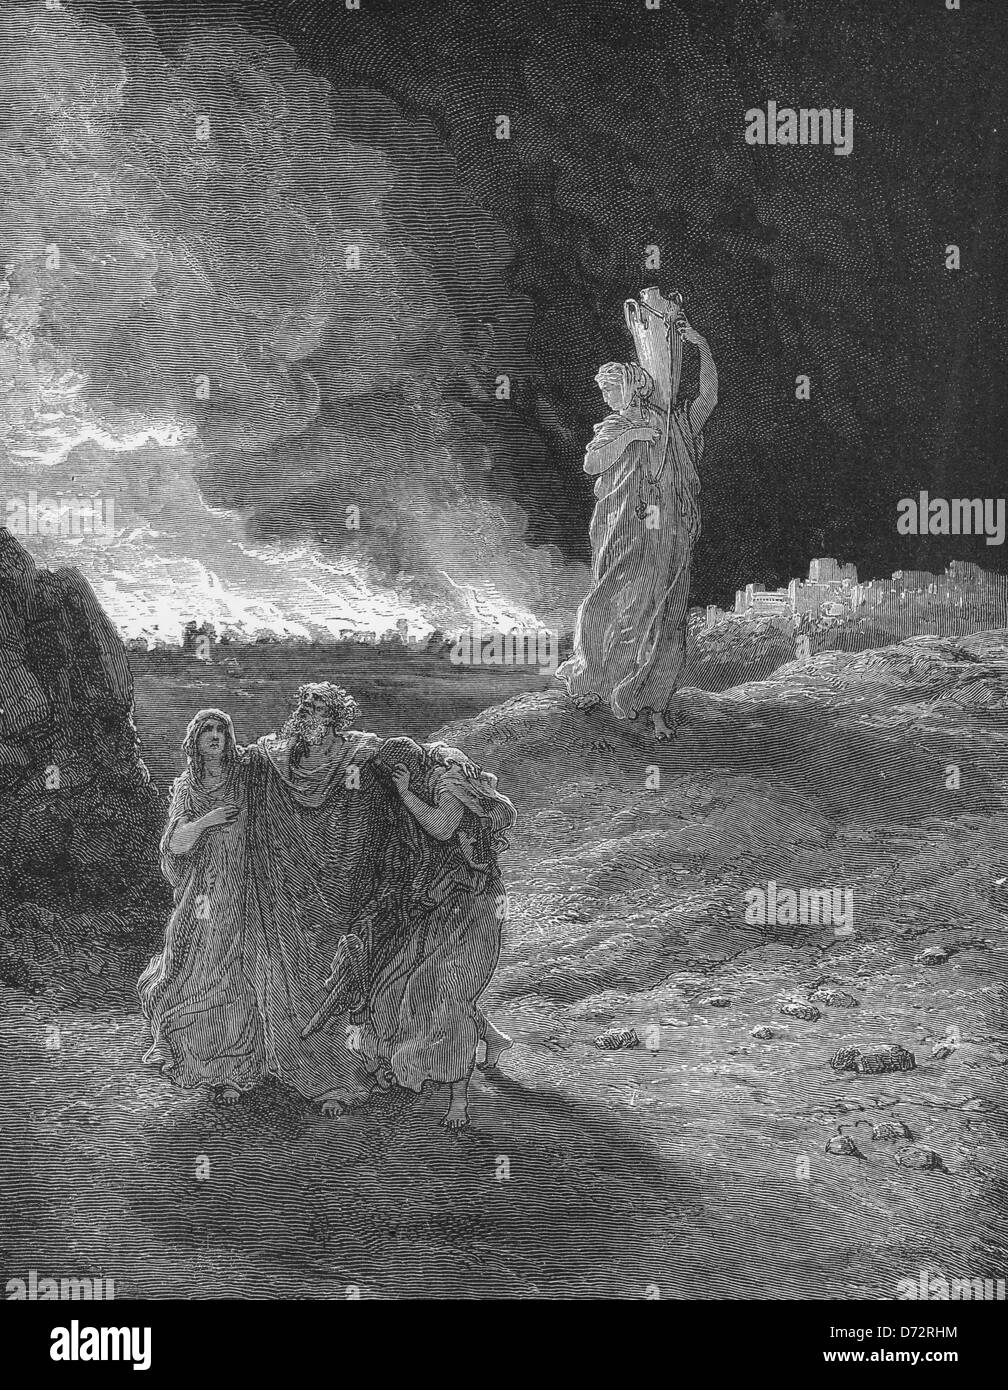 Lot und seine Familie entkommen einen brennenden Sodom, während Lots Frau in eine Salzsäule verwandelt ist, wenn sie zurückschaut.  Altes Testament Stockfoto